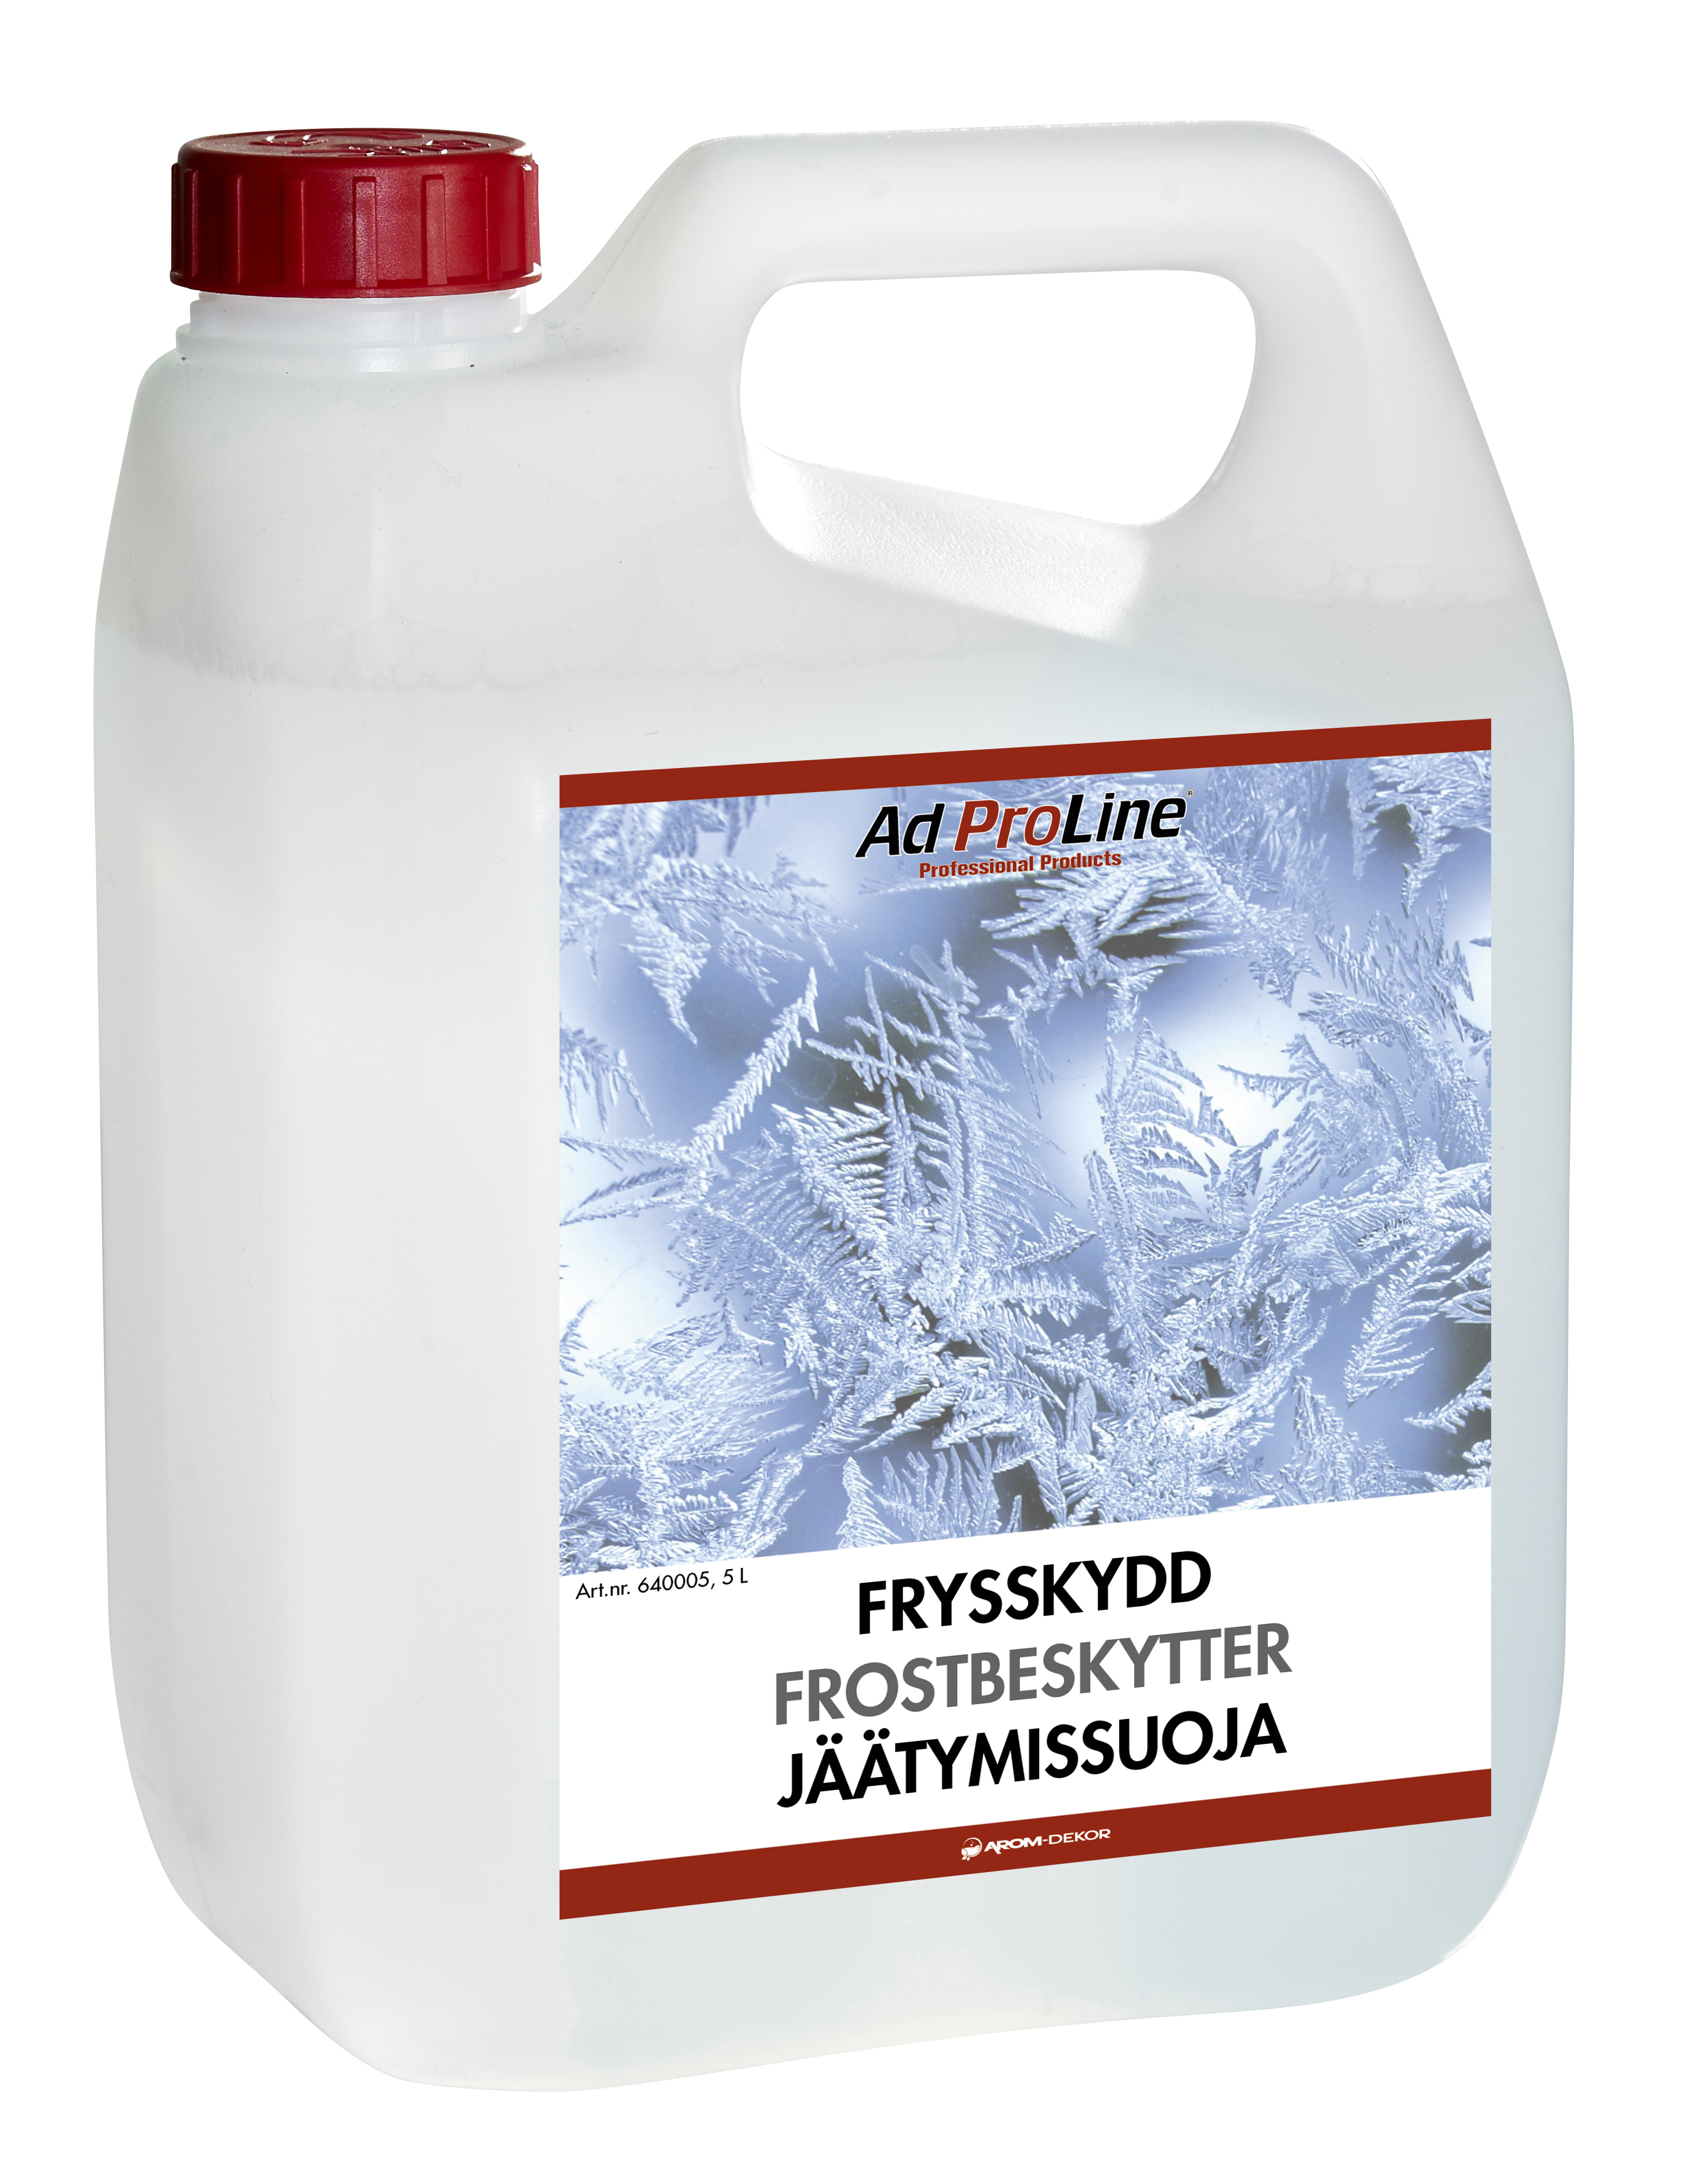 AdProLine® Frysskydd, 5 liter dunk (6-pack)-image